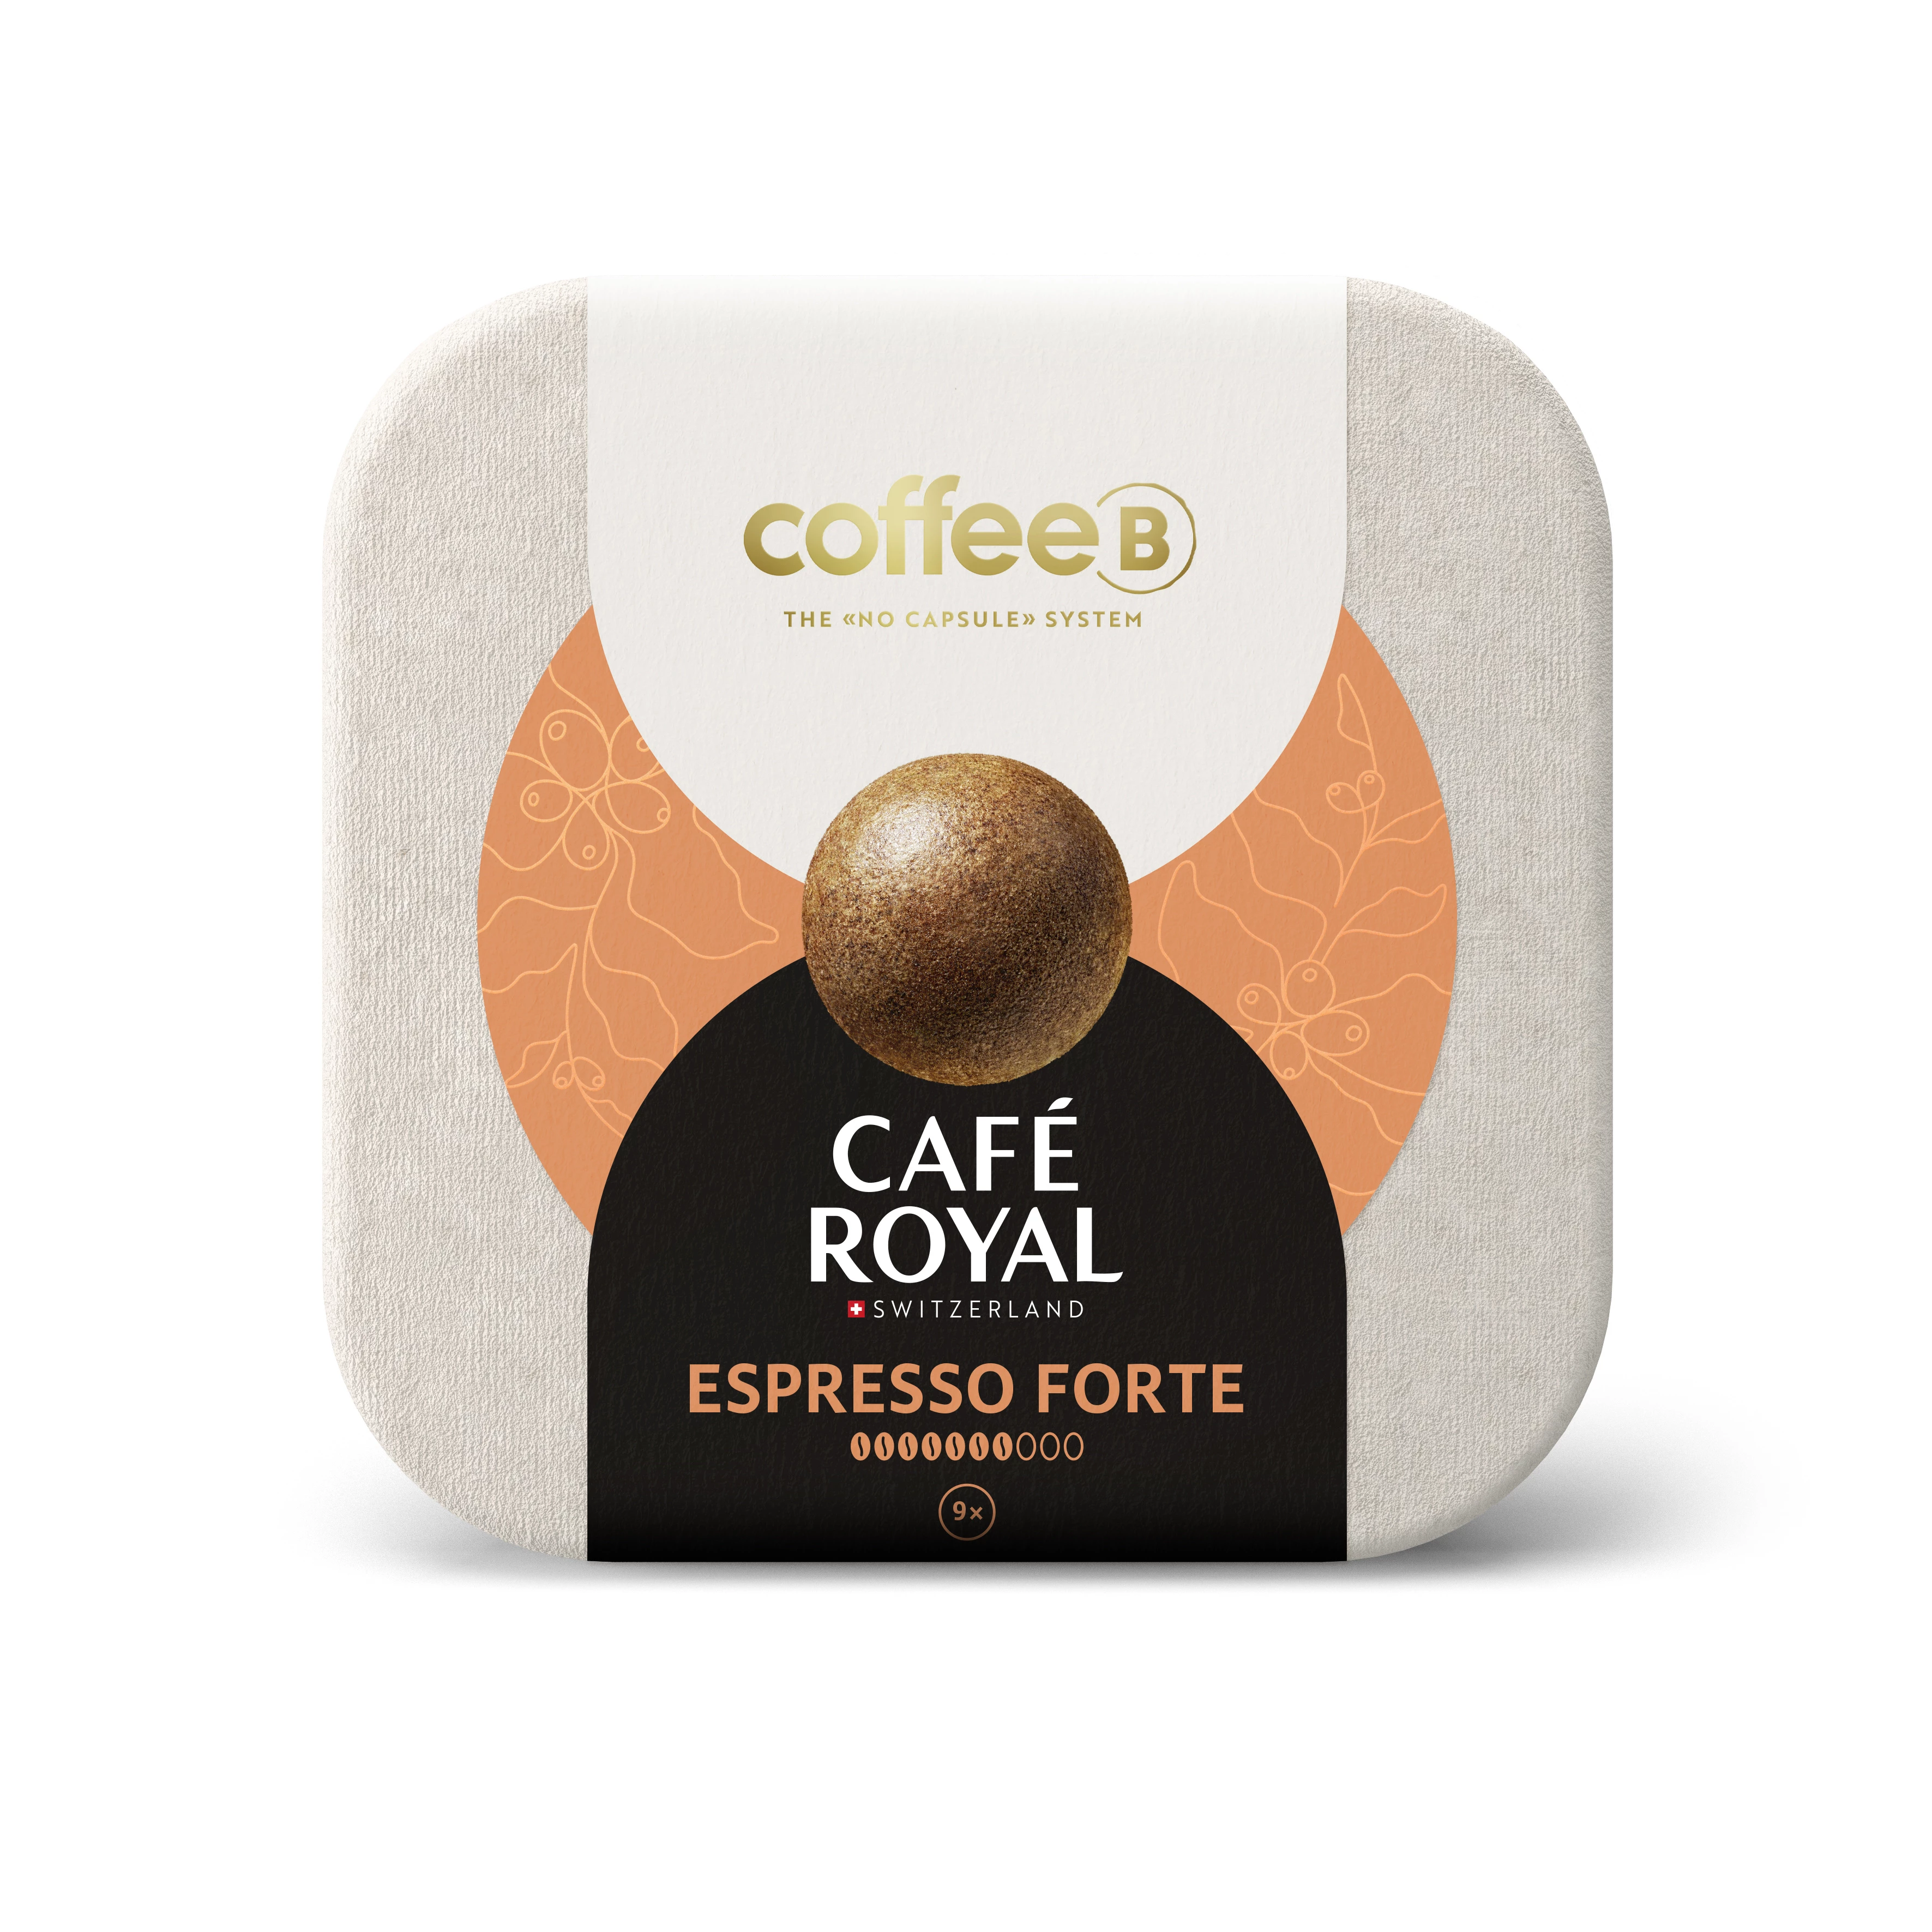 Boules Coffee B Espresso Forte; x9; 50g - CAFE ROYAL